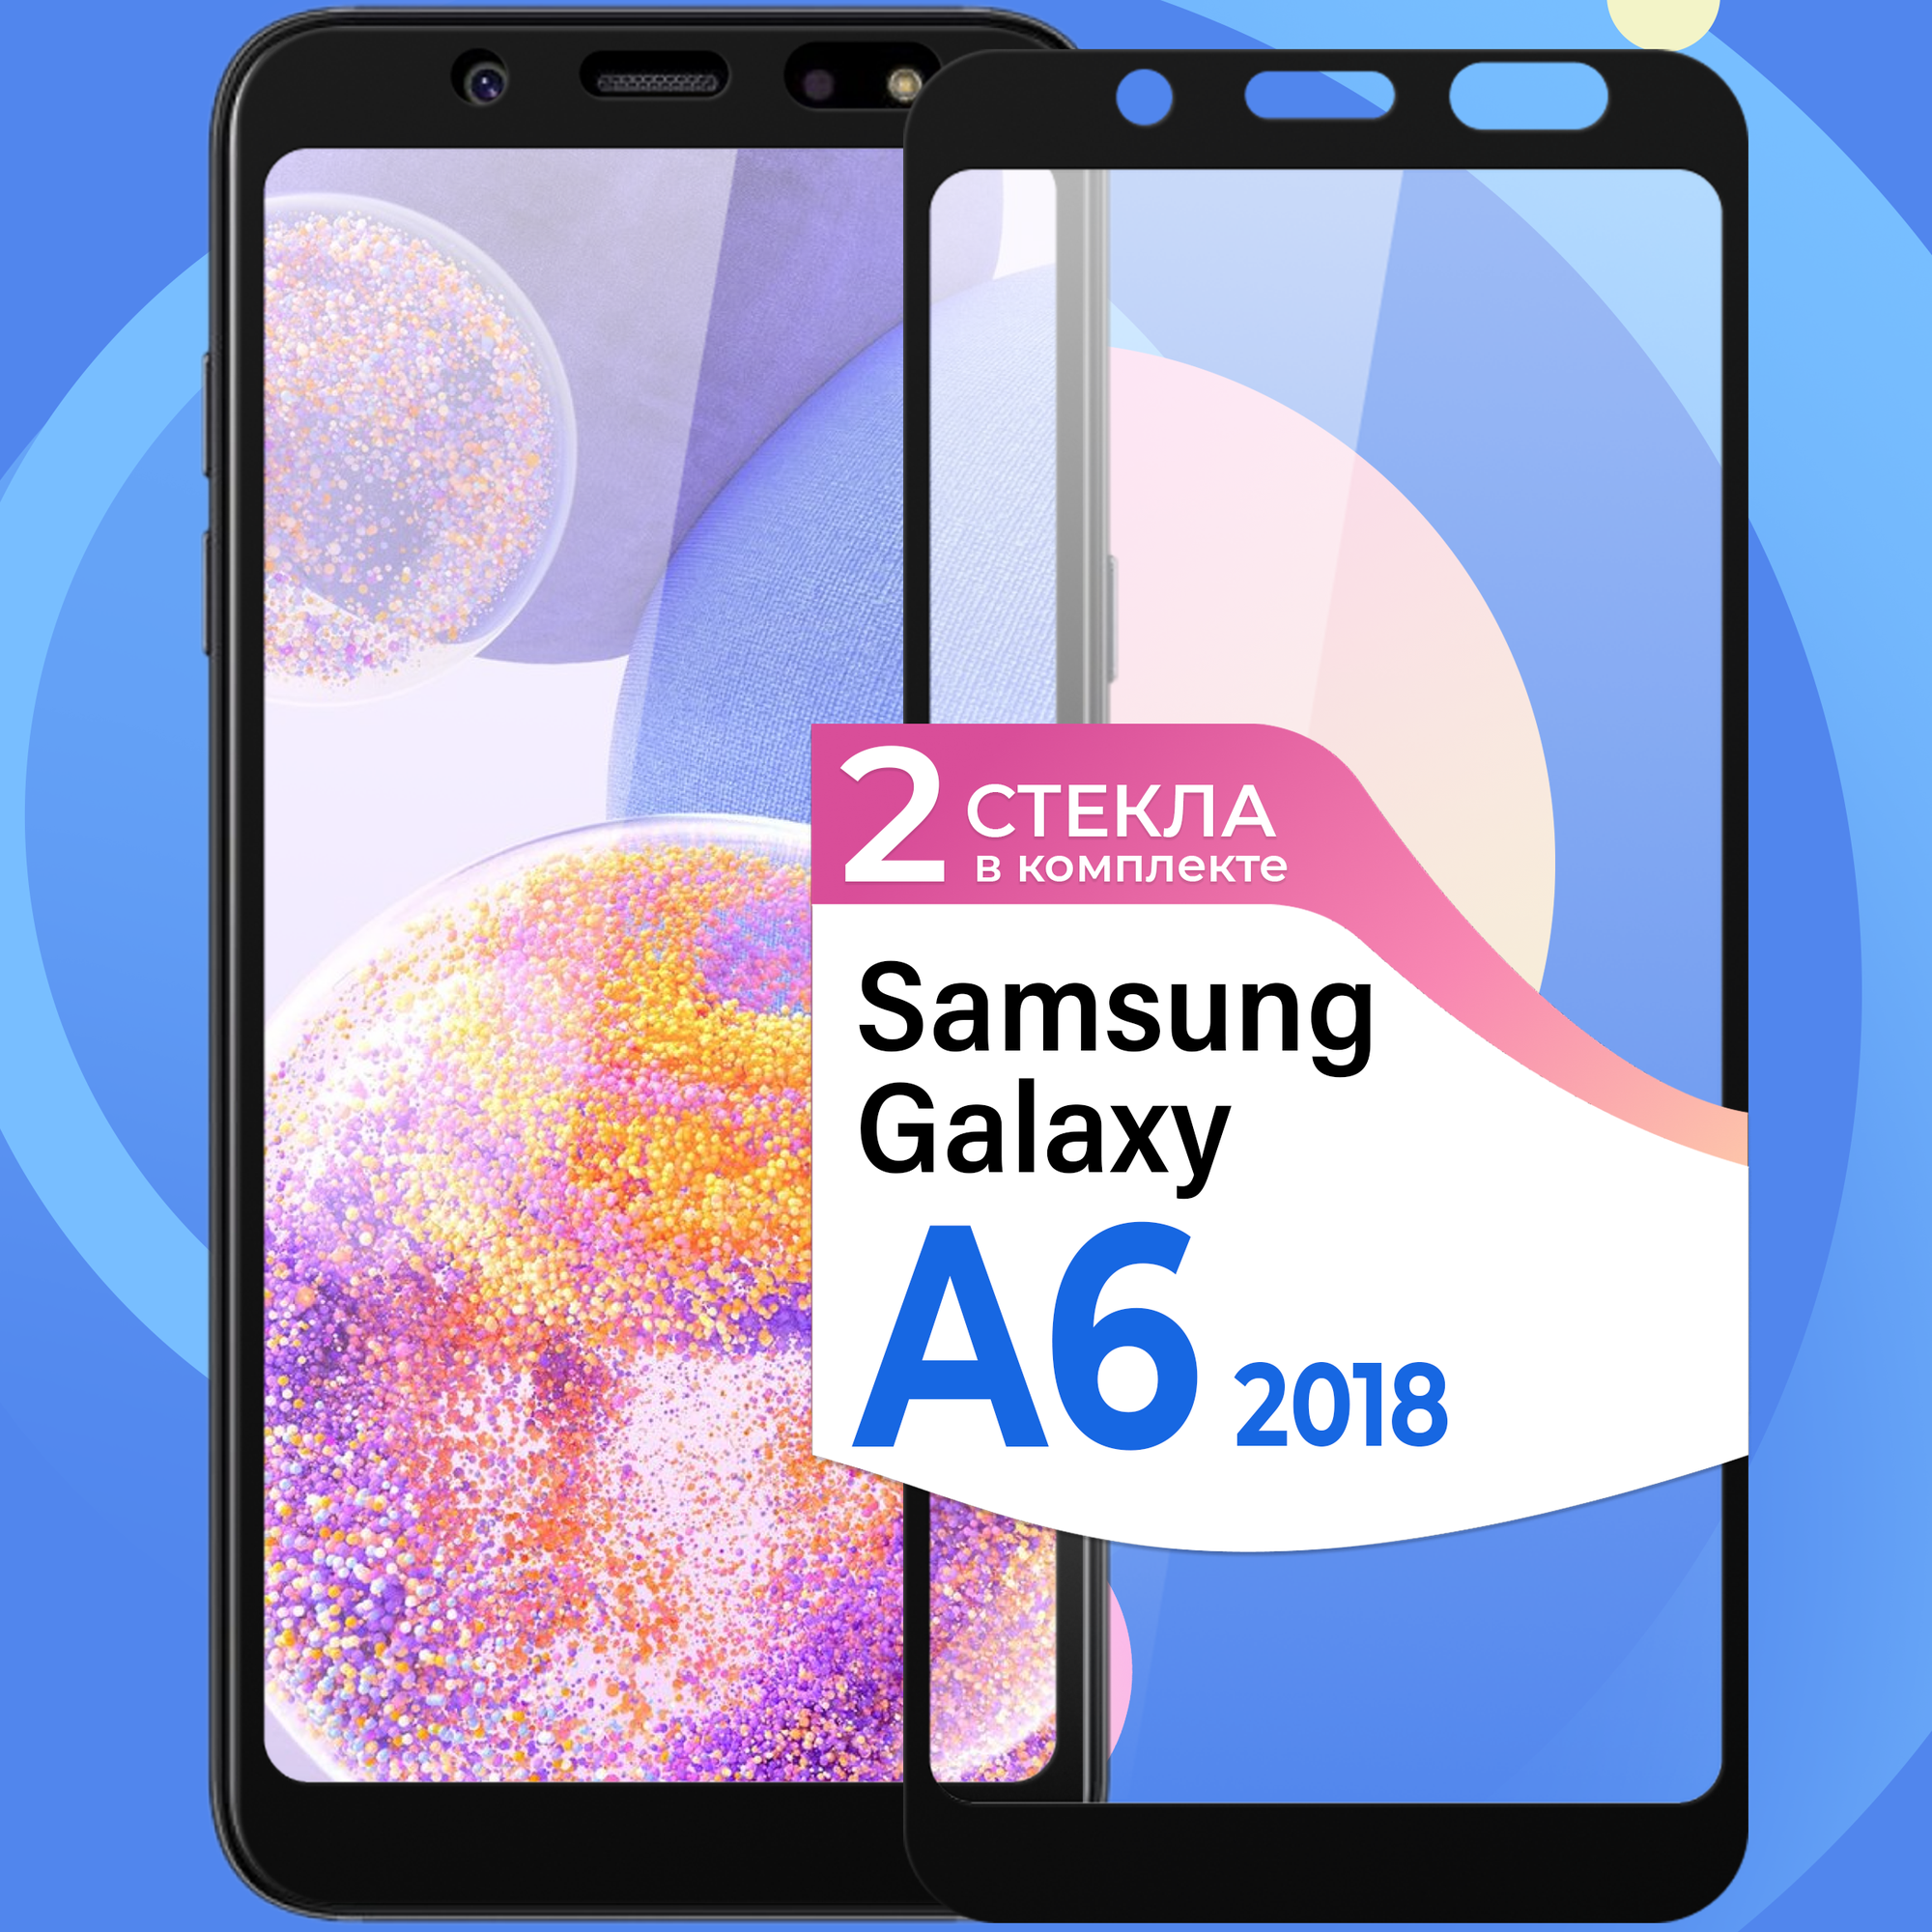 Комплект 2 шт. Защитное стекло на телефон Samsung Galaxy A6 2018 / Противоударное олеофобное стекло для смартфона Самсунг Галакси А6 2018